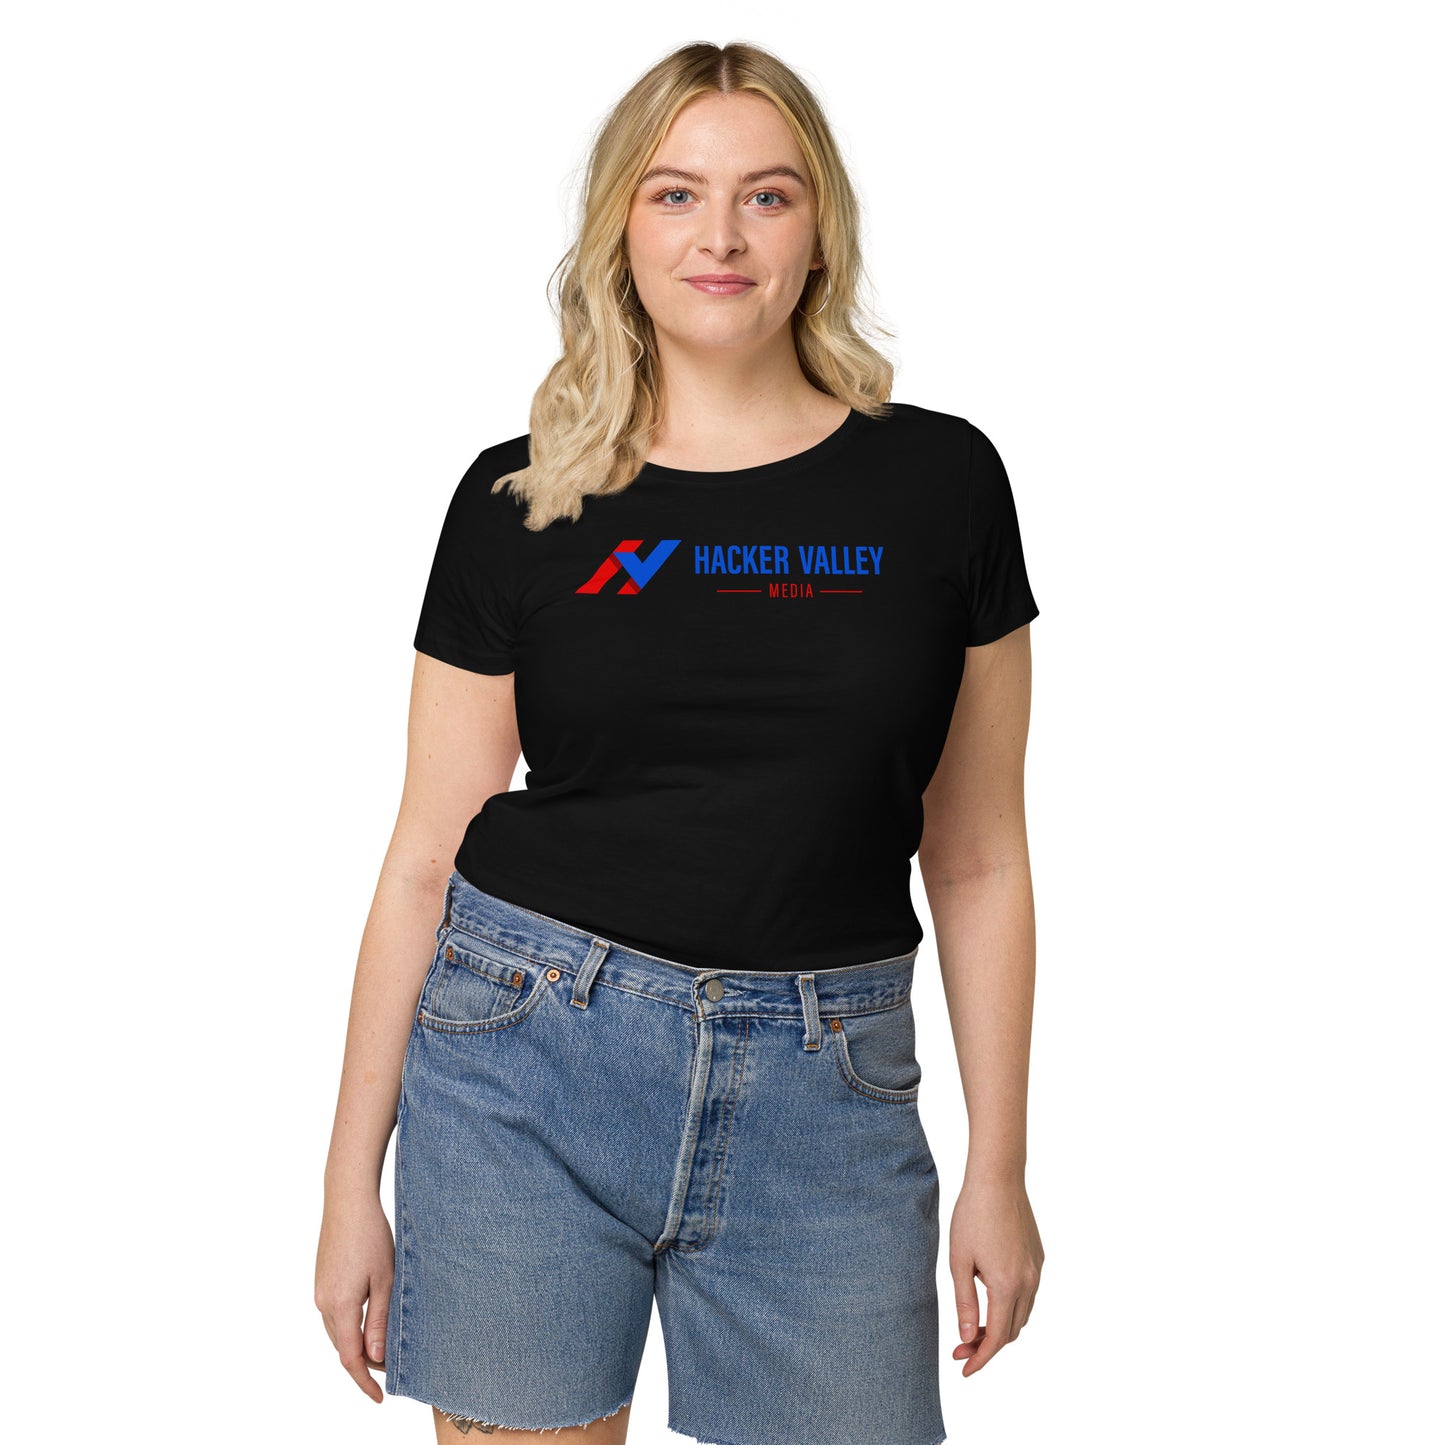 A Hacker's Gem T-shirt